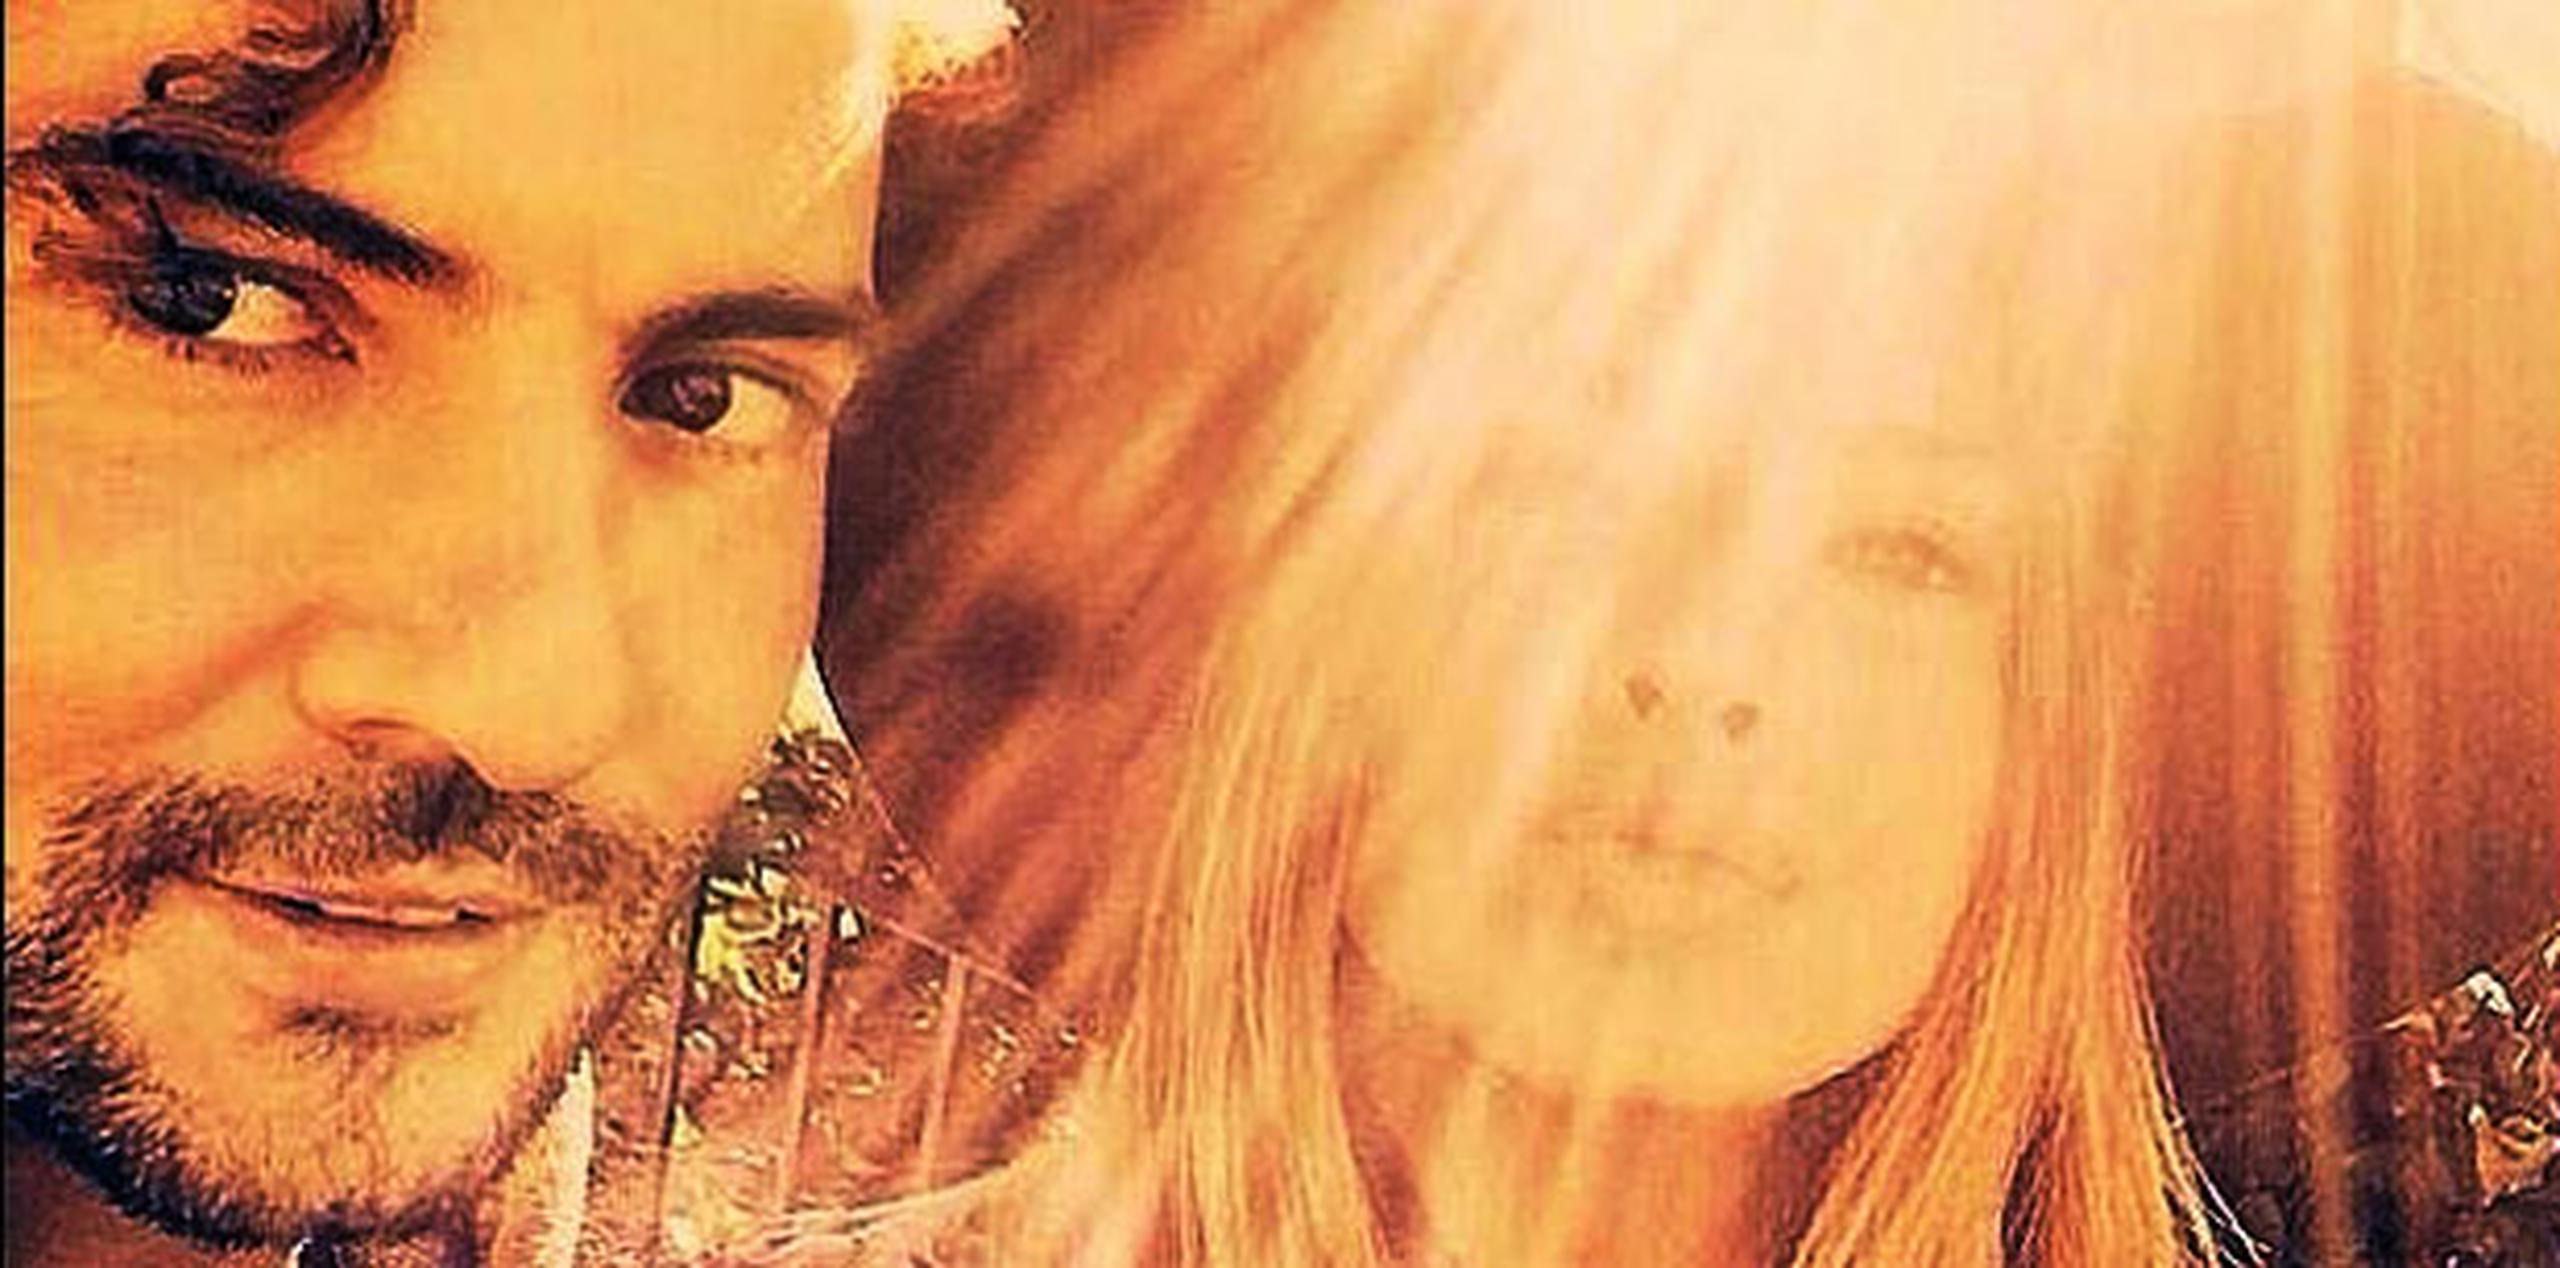 Los rumores sobre un posible romance aparecieron cuando Bisbal viajó a Argentina para grabar el vídeo musical de la canción "Hoy" que tuvo a Suárez como protagonista. (Instagram)
